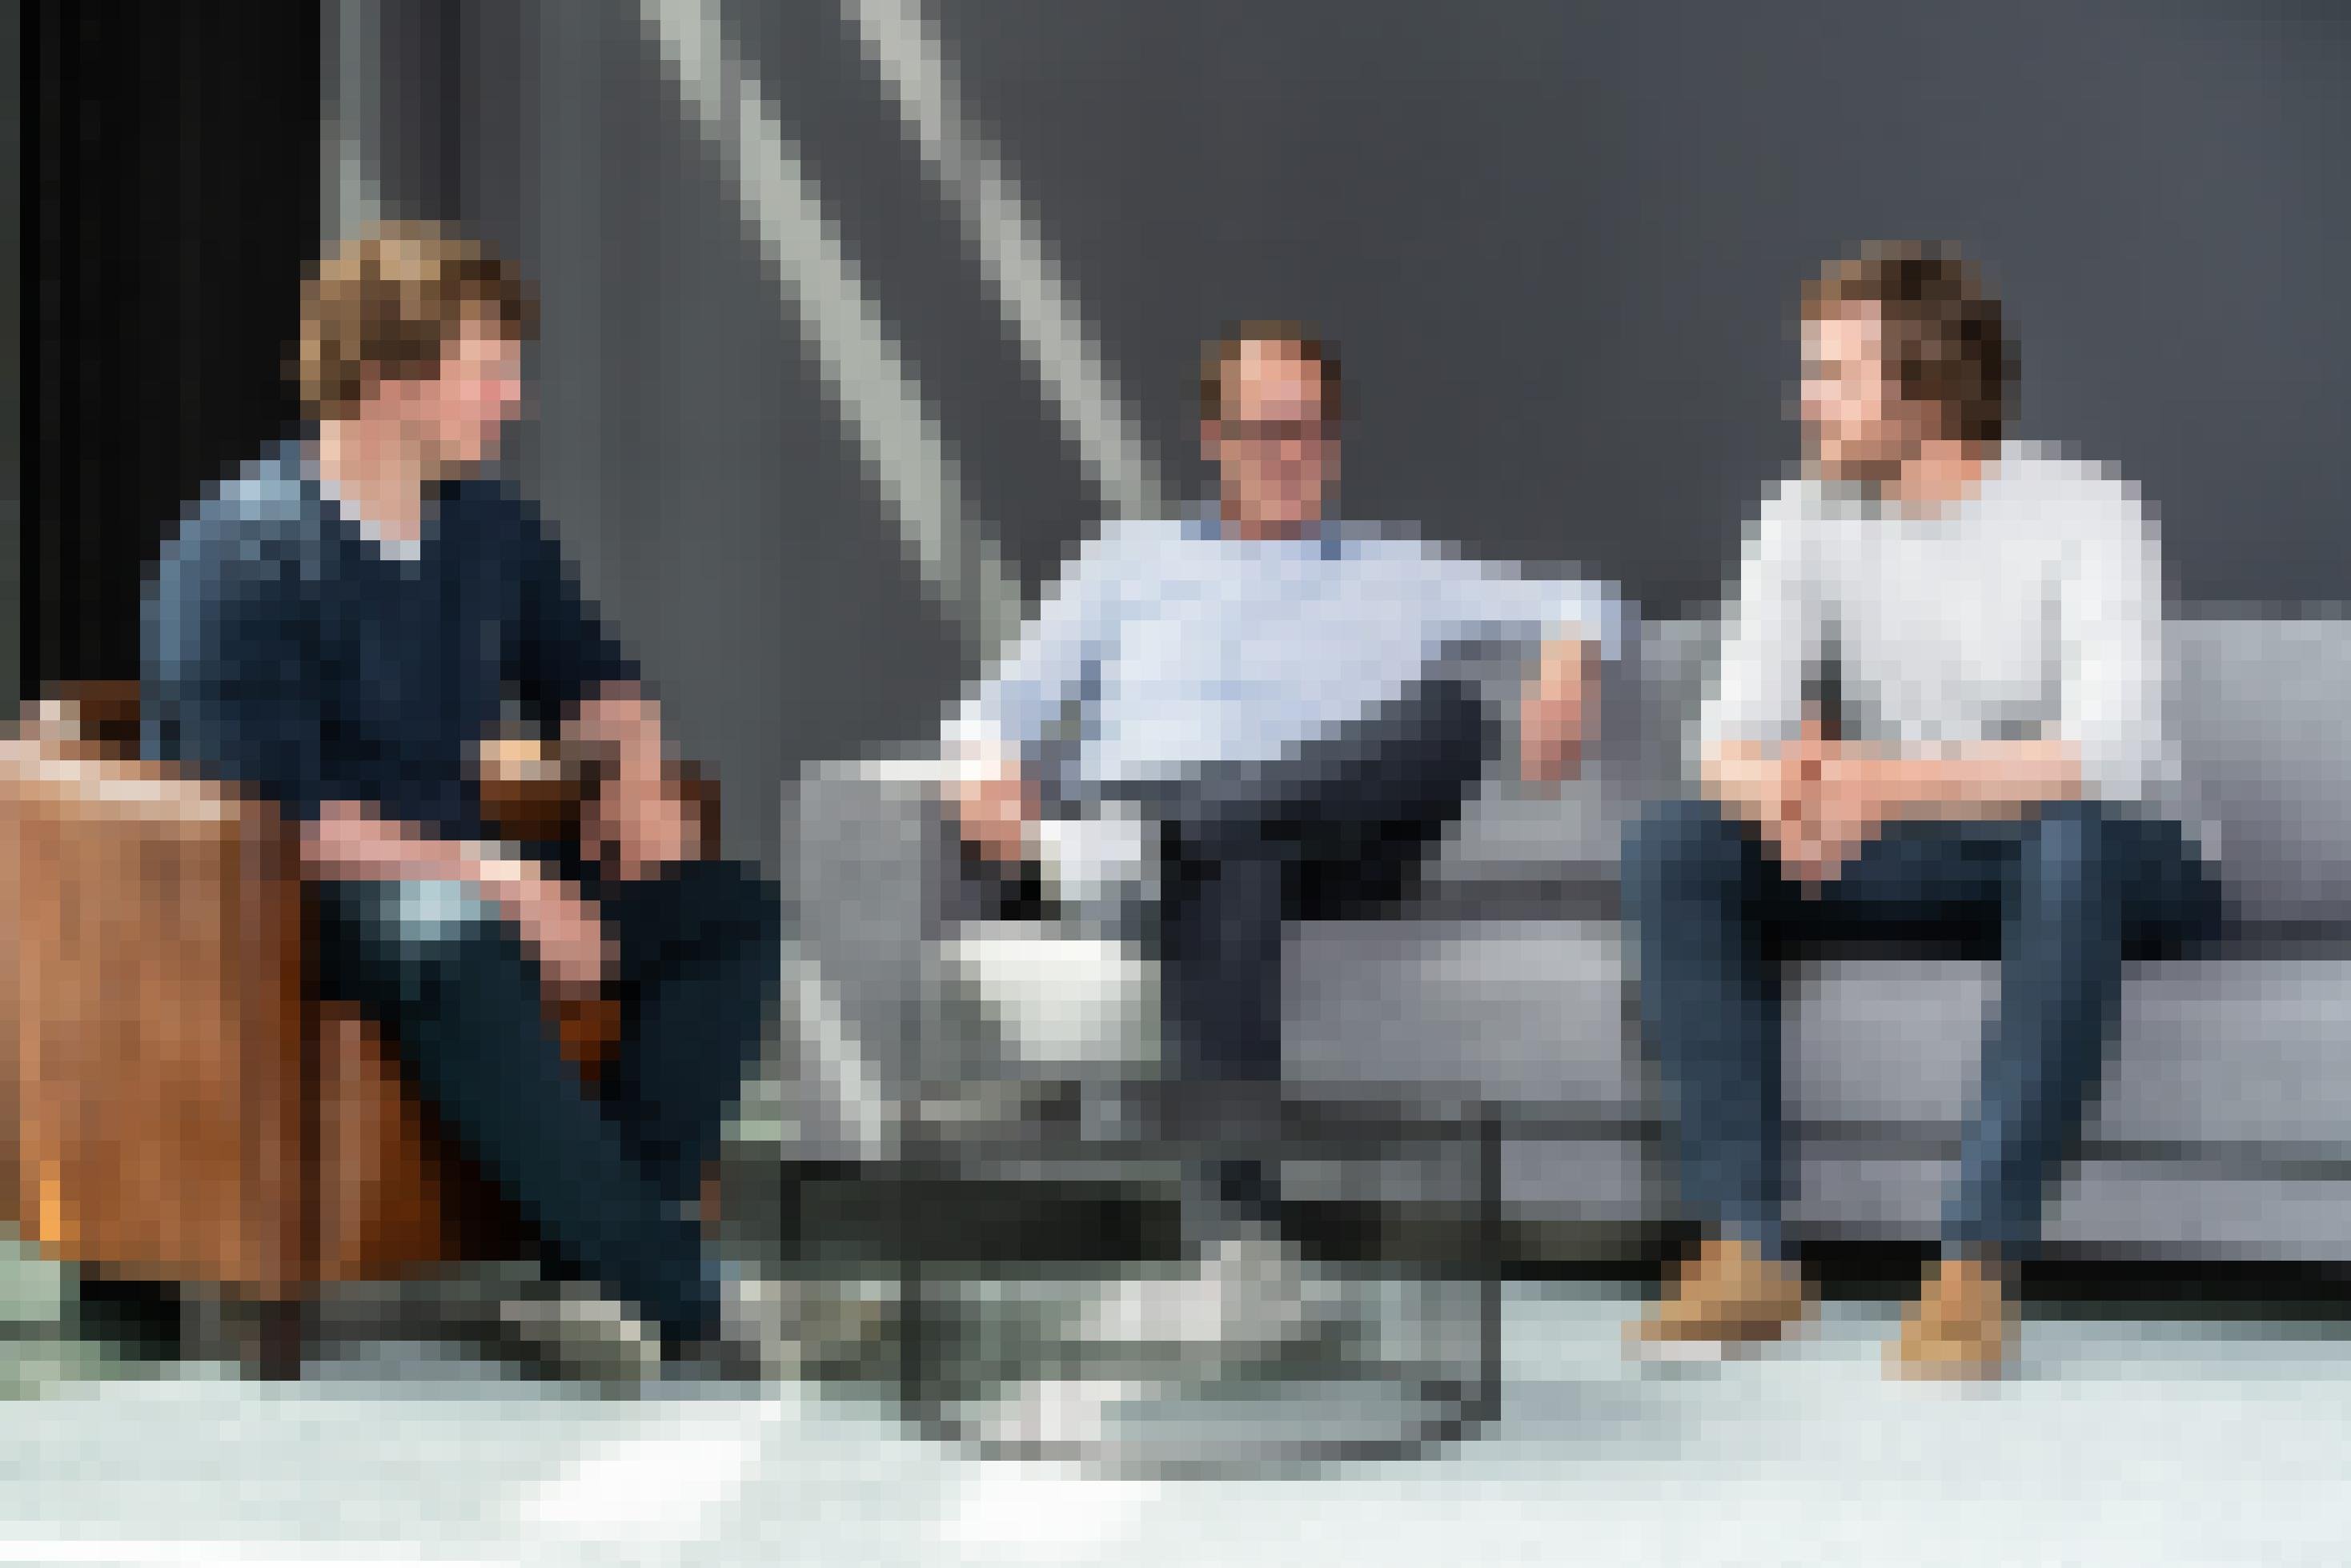 Das Bild zeigt die drei Tiplu-Gründer von links Tim Aschenberg, Peter Molitor und Lukas Aschenberg auf einem Sofa im Gespräch.